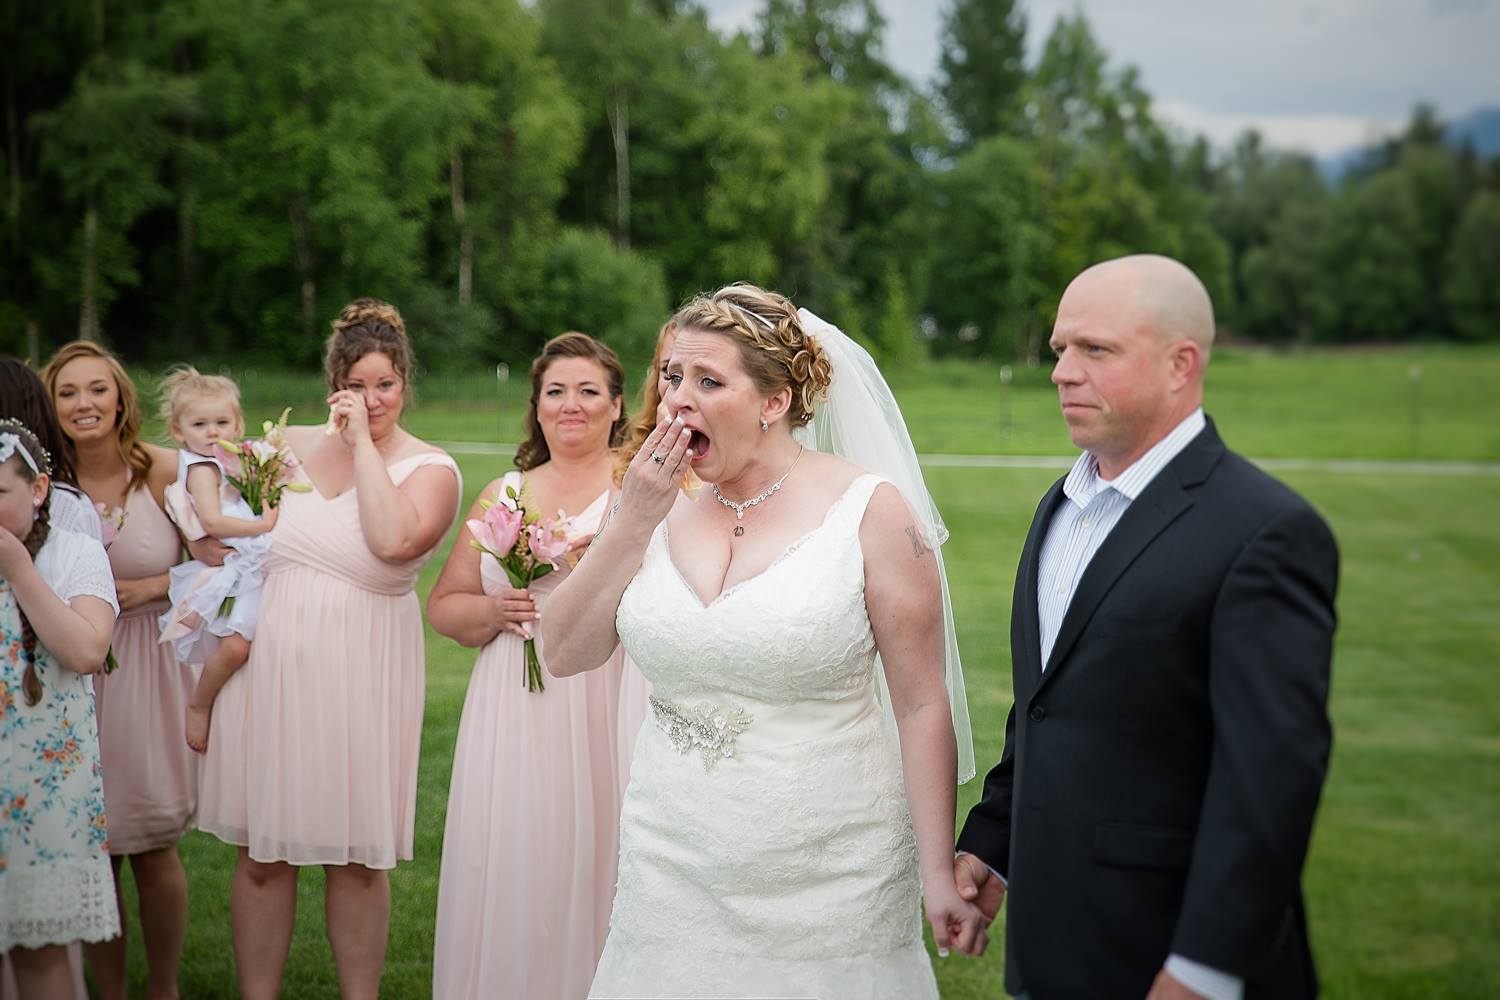 Līgava bija pārsteigta, kad viņas līgavainis apstādināja kāzu ceremoniju. Kad viņa uzzināja iemeslu, tad nevarēja noturēt asaras